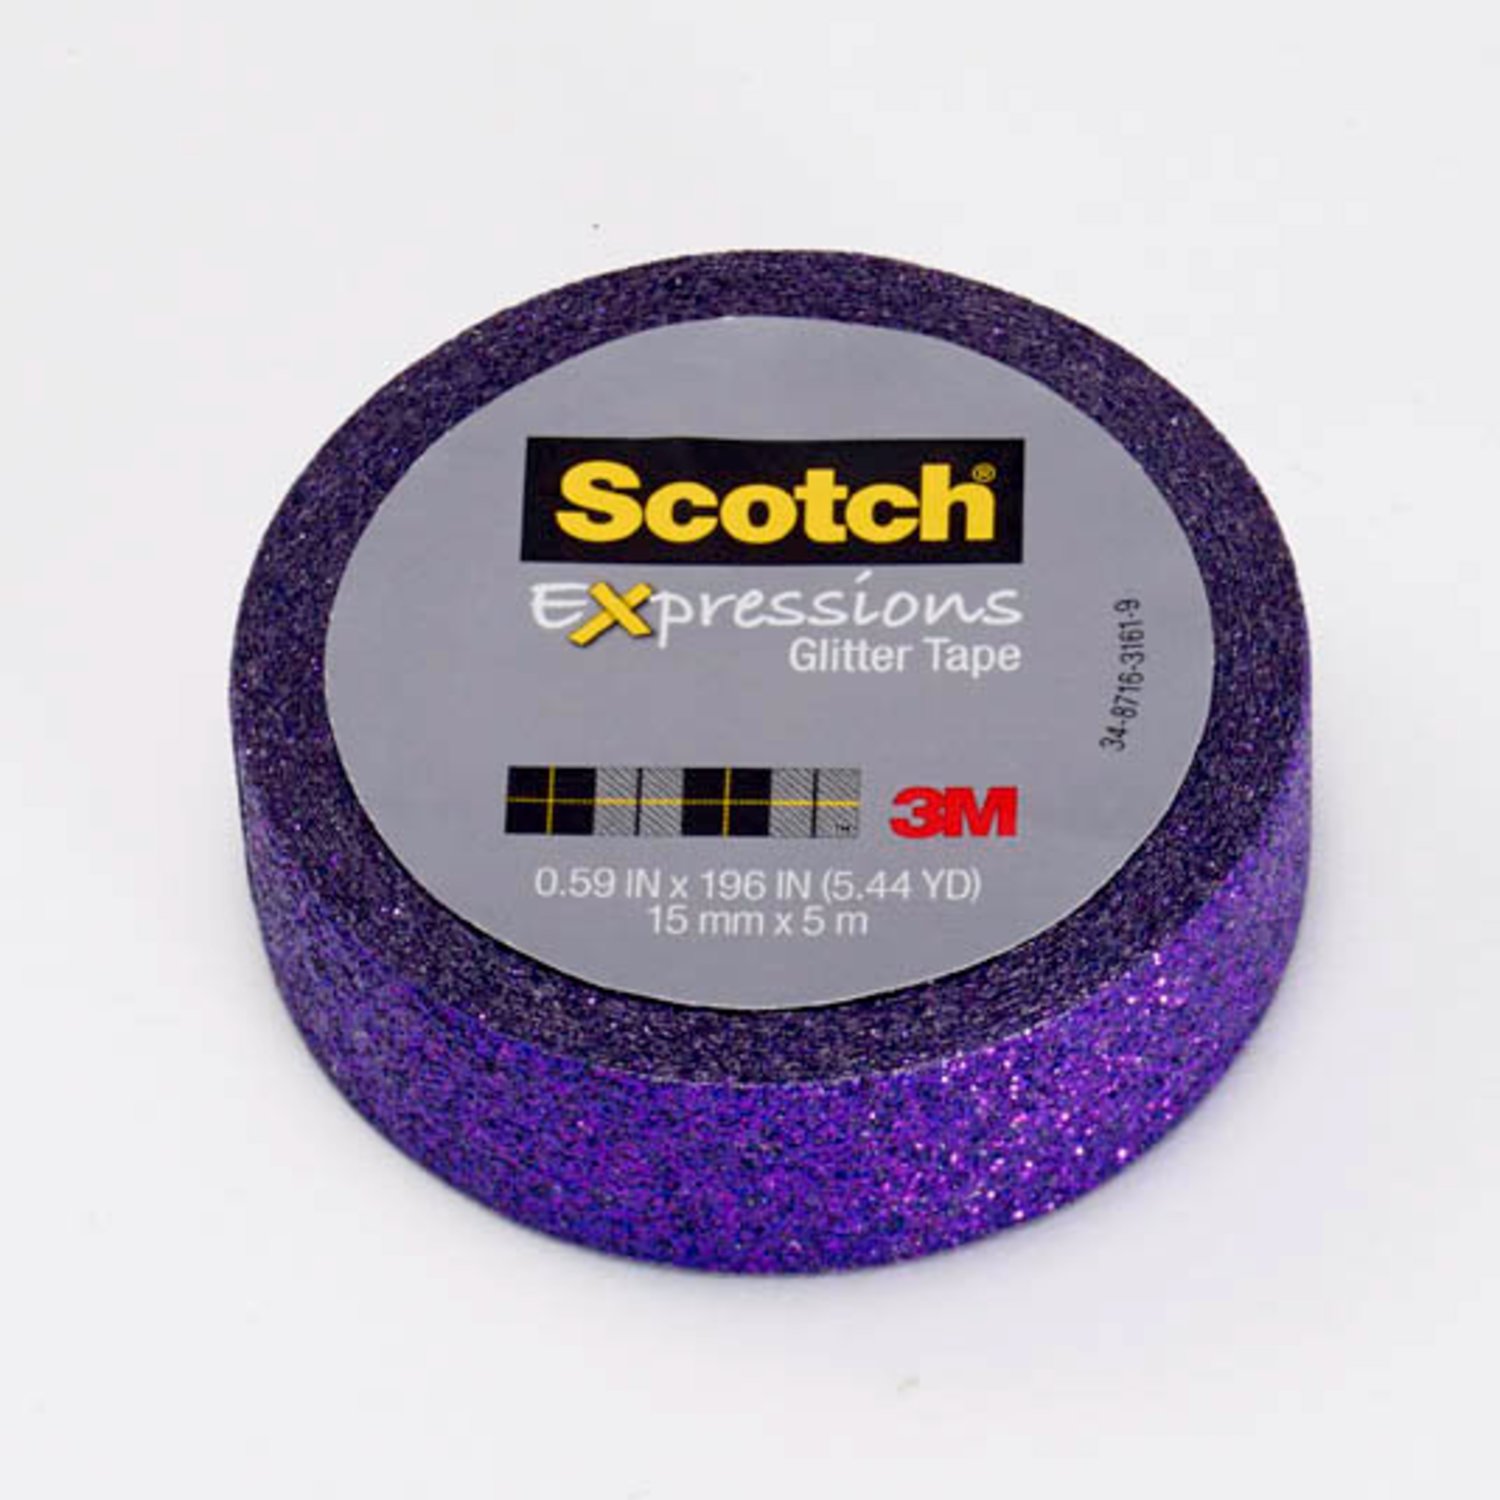 7100143032 - Scotch Expressions Glitter Tape C514-PUR, .59 in x 196 in (15 mm x 5 m)
Bright Violet Glitter